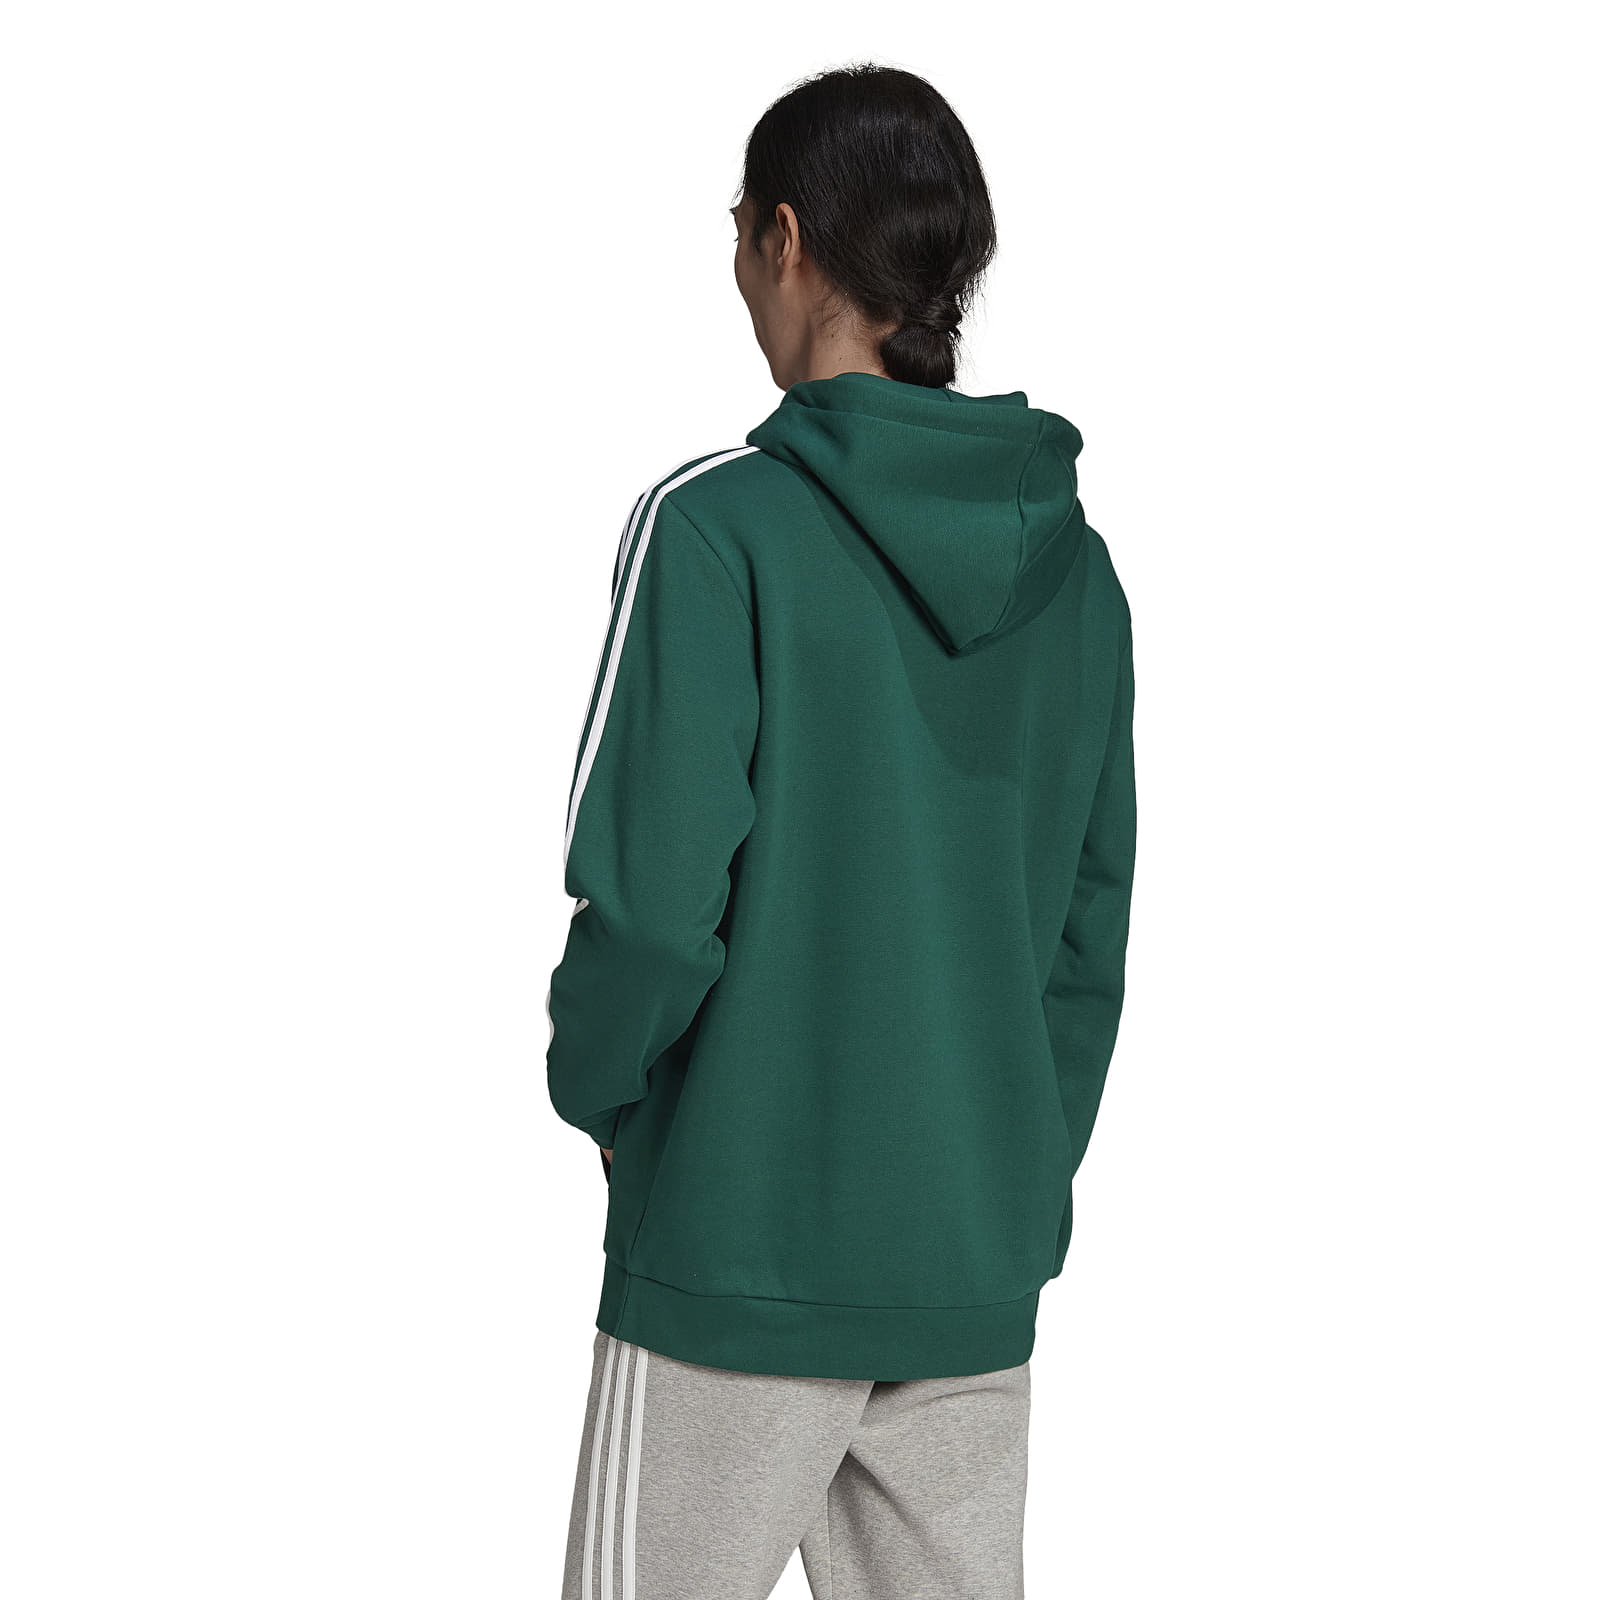 Hoodies and Hoodie Originals 3-Stripes | adidas Green Footshop sweatshirts